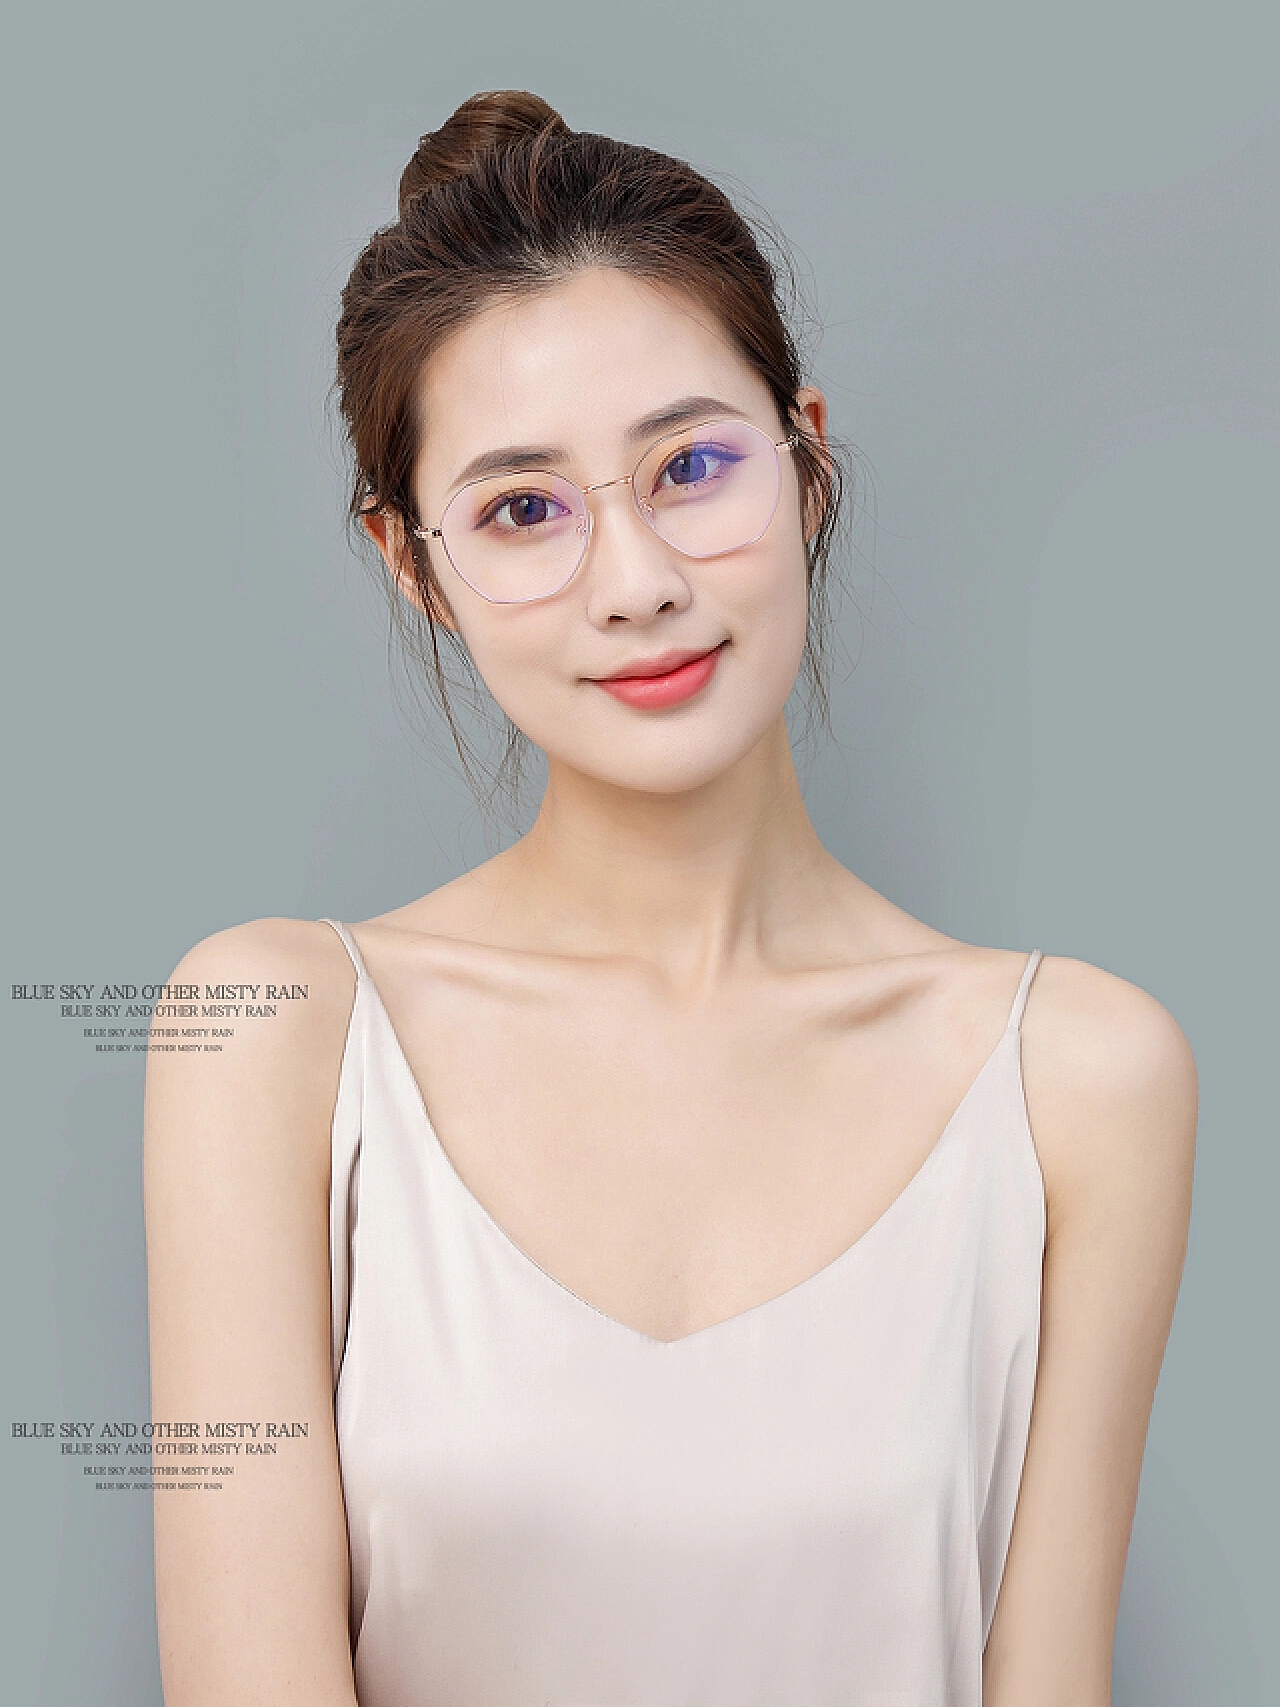 迷人的美女模特眼镜广告高清壁纸-1280x960下载 | 10wallpaper.com